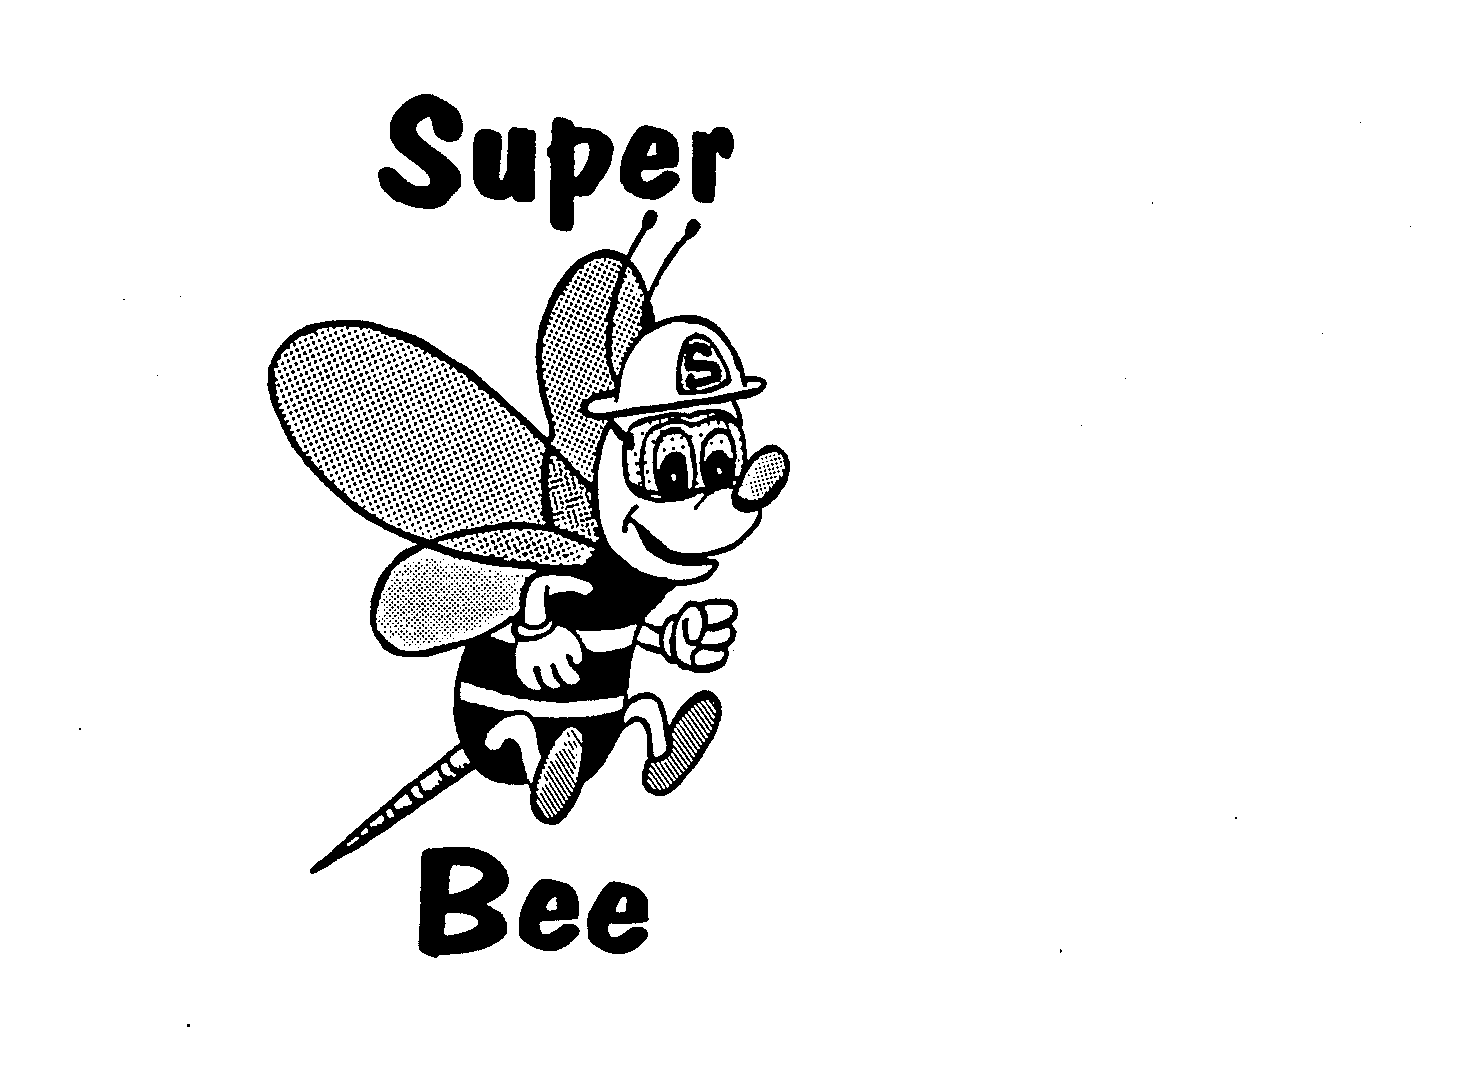  SUPER BEES